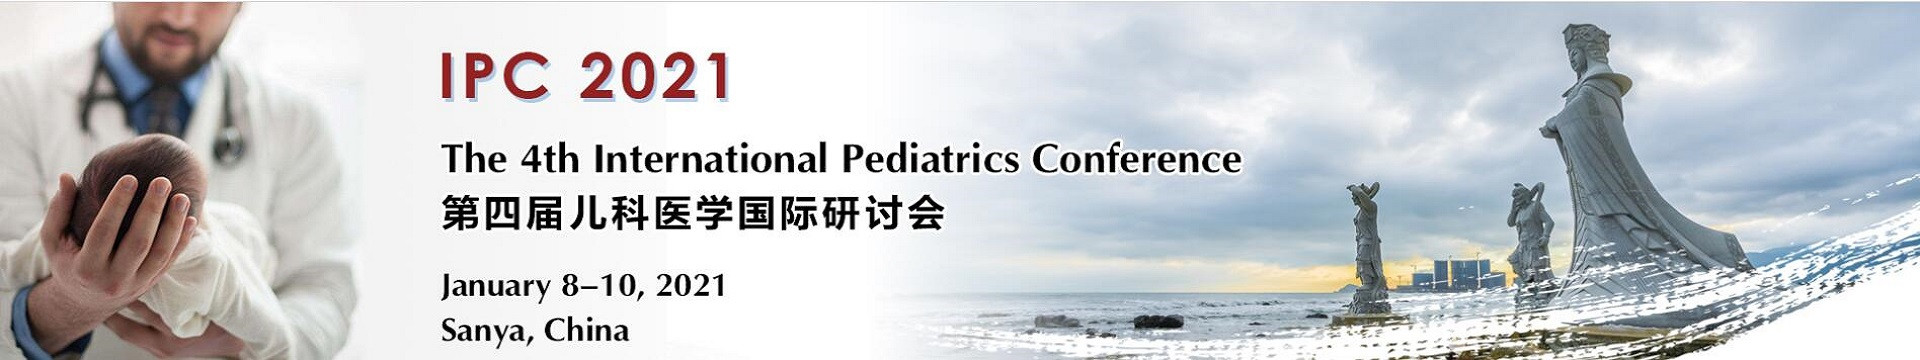 第四届儿科医学国际研讨会(IPC 2021)